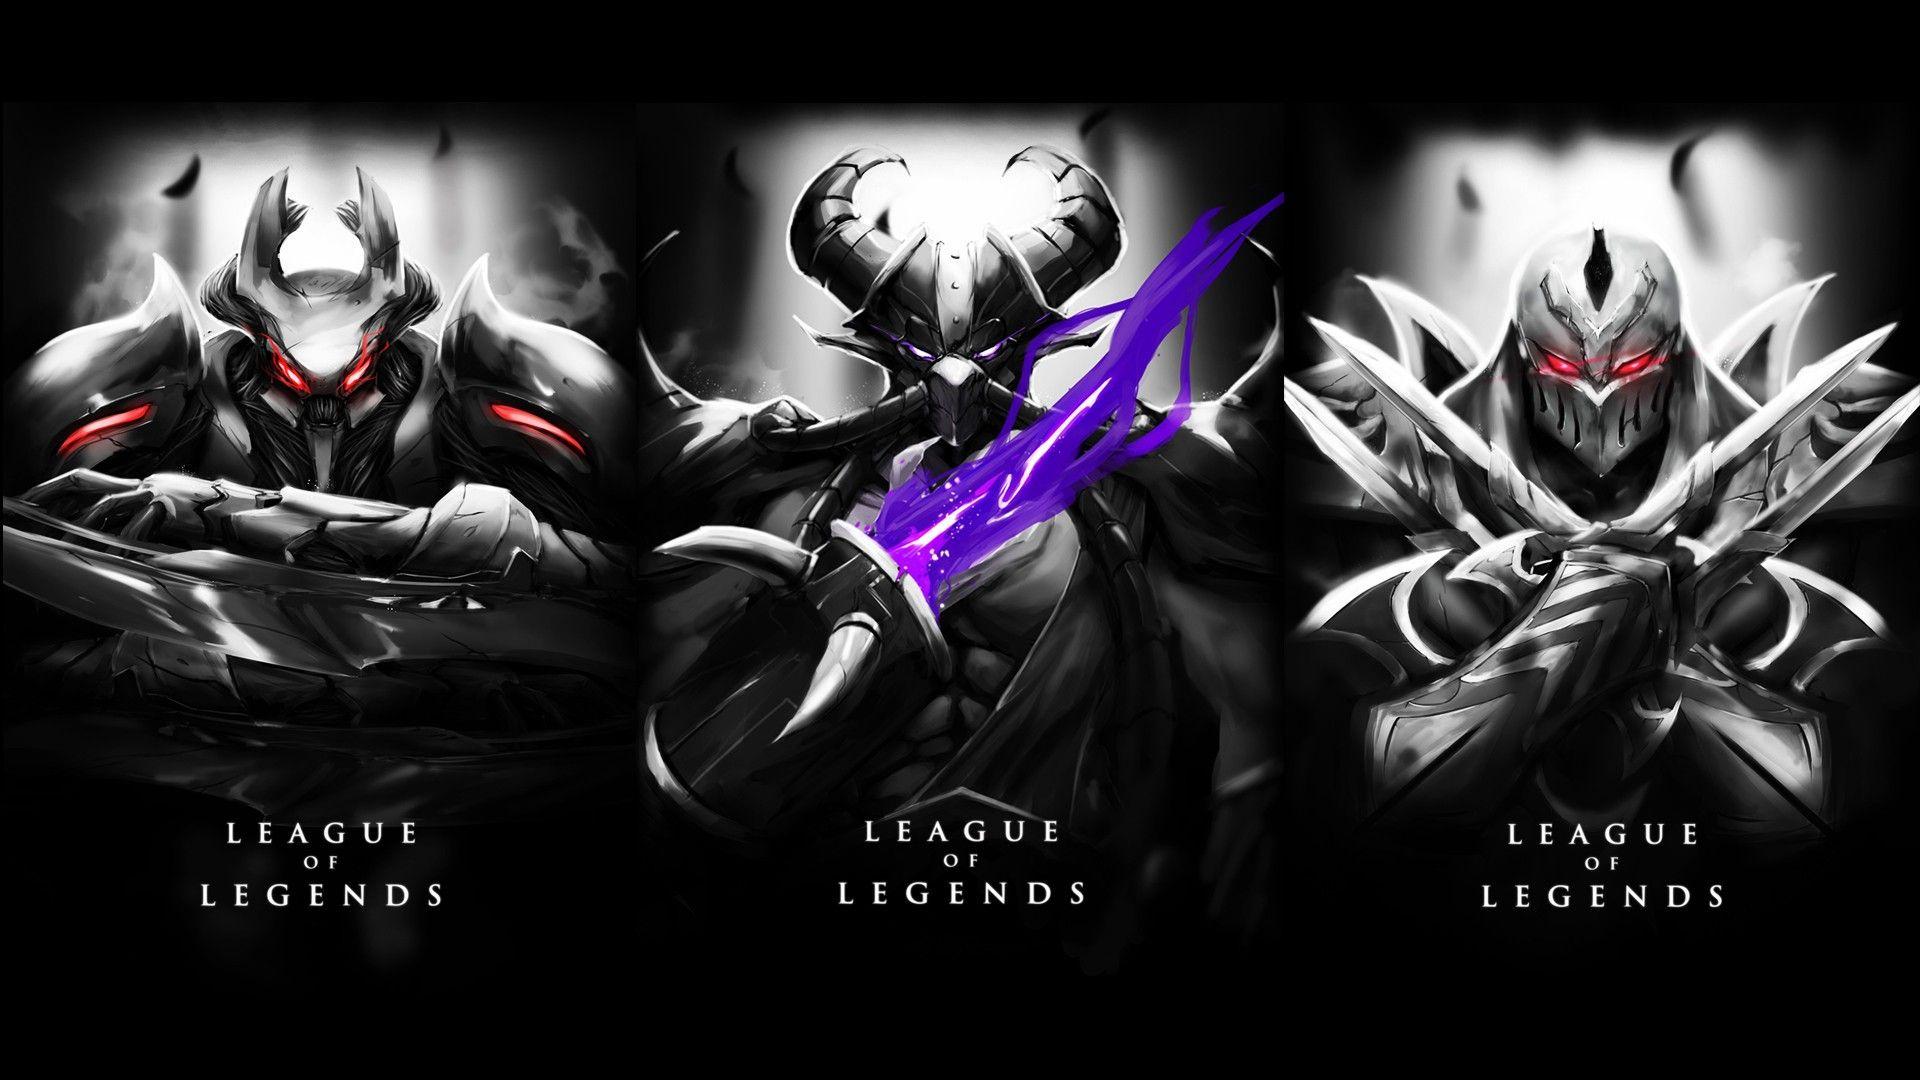 League Of Legends, Nocturne, Kassadin, Zed Wallpaper HD / Desktop